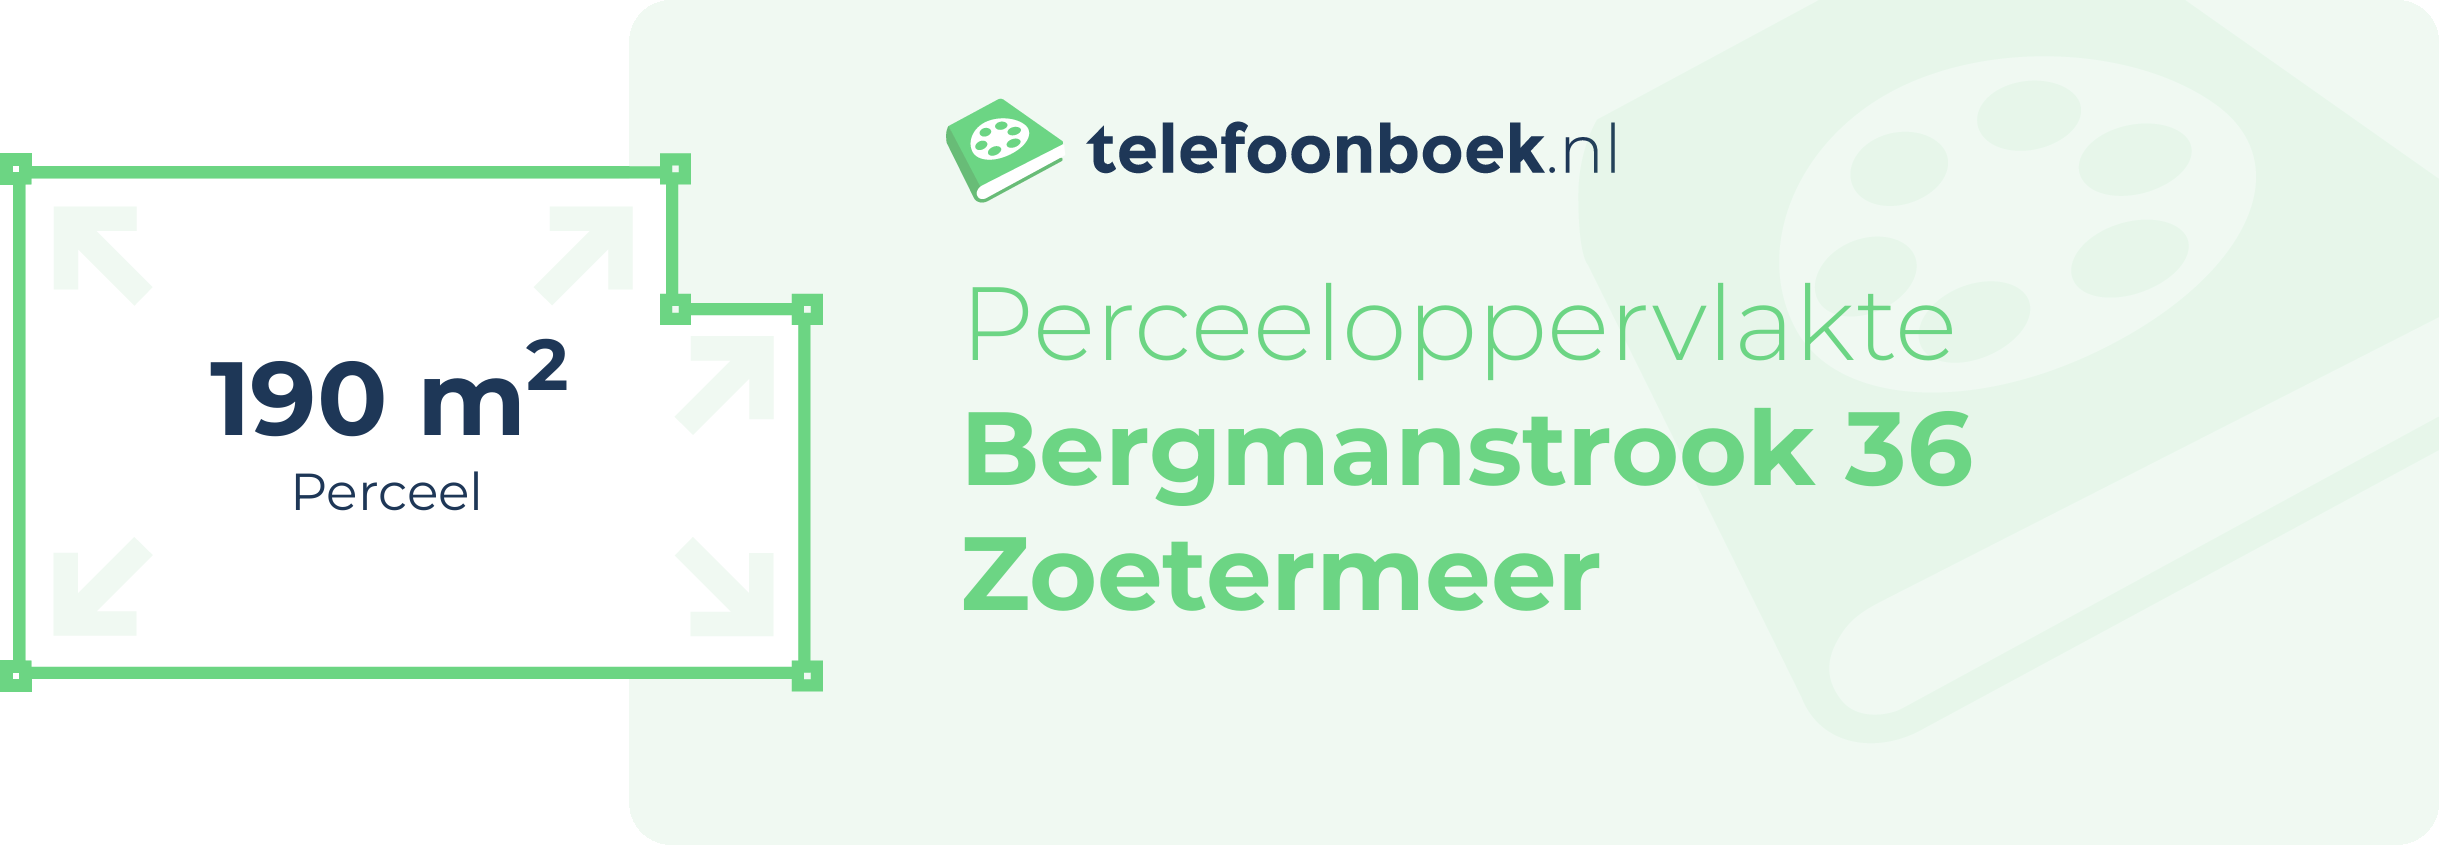 Perceeloppervlakte Bergmanstrook 36 Zoetermeer